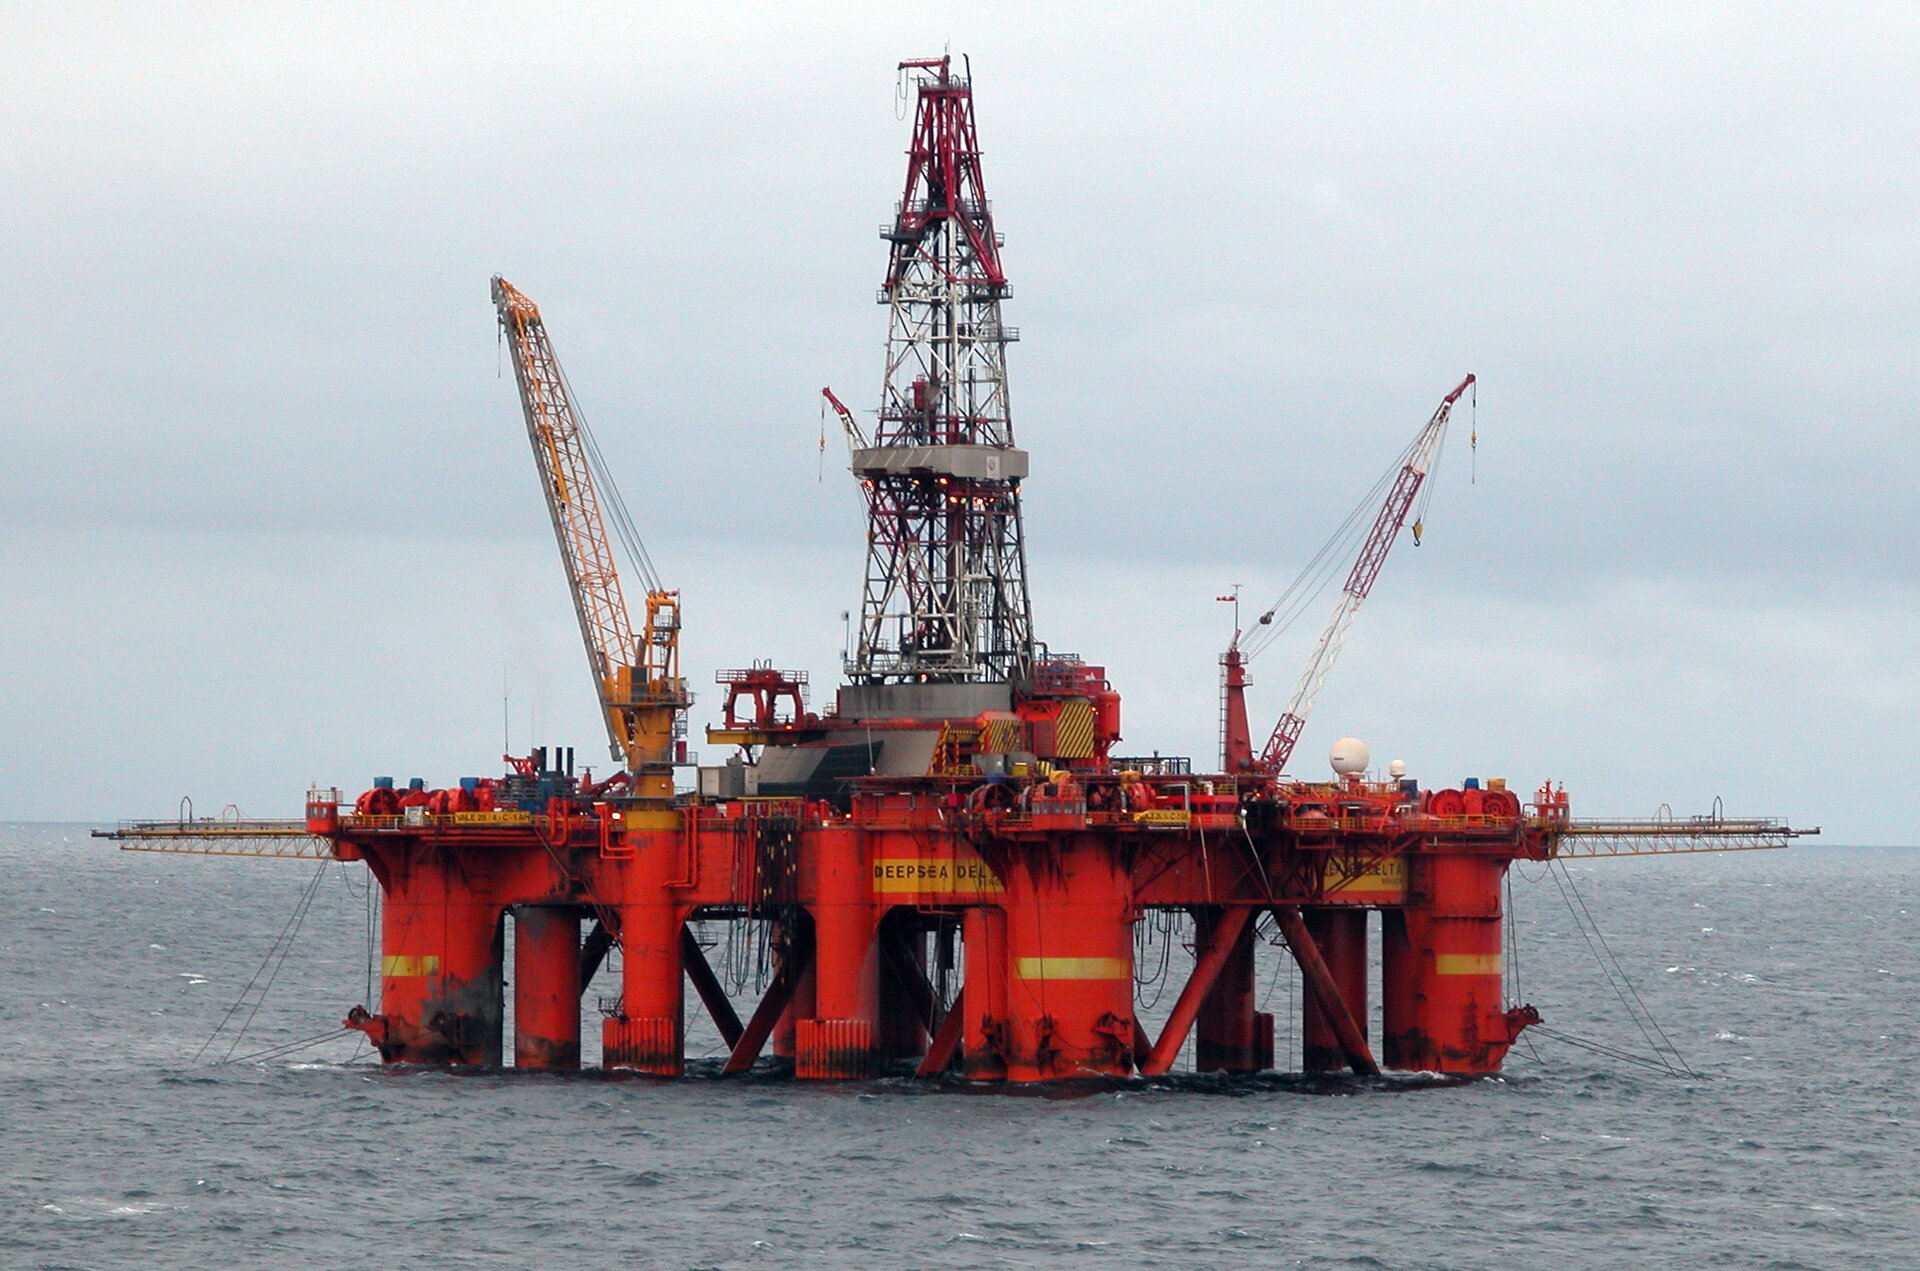 Zdjęcie przedstawia platformę wiertniczą Deepsea Delta firmy Odfjell Drilling na Morzu Północnym. Platforma umieszczona jest na grubych, czerwonych palach wbitych w dno morza. Jest rozległa, w górę w centralnej części wystaje z niej duży stalowy maszt, który otaczają wysokie dźwigi. Dookoła platformy znajduje się woda z falami. 